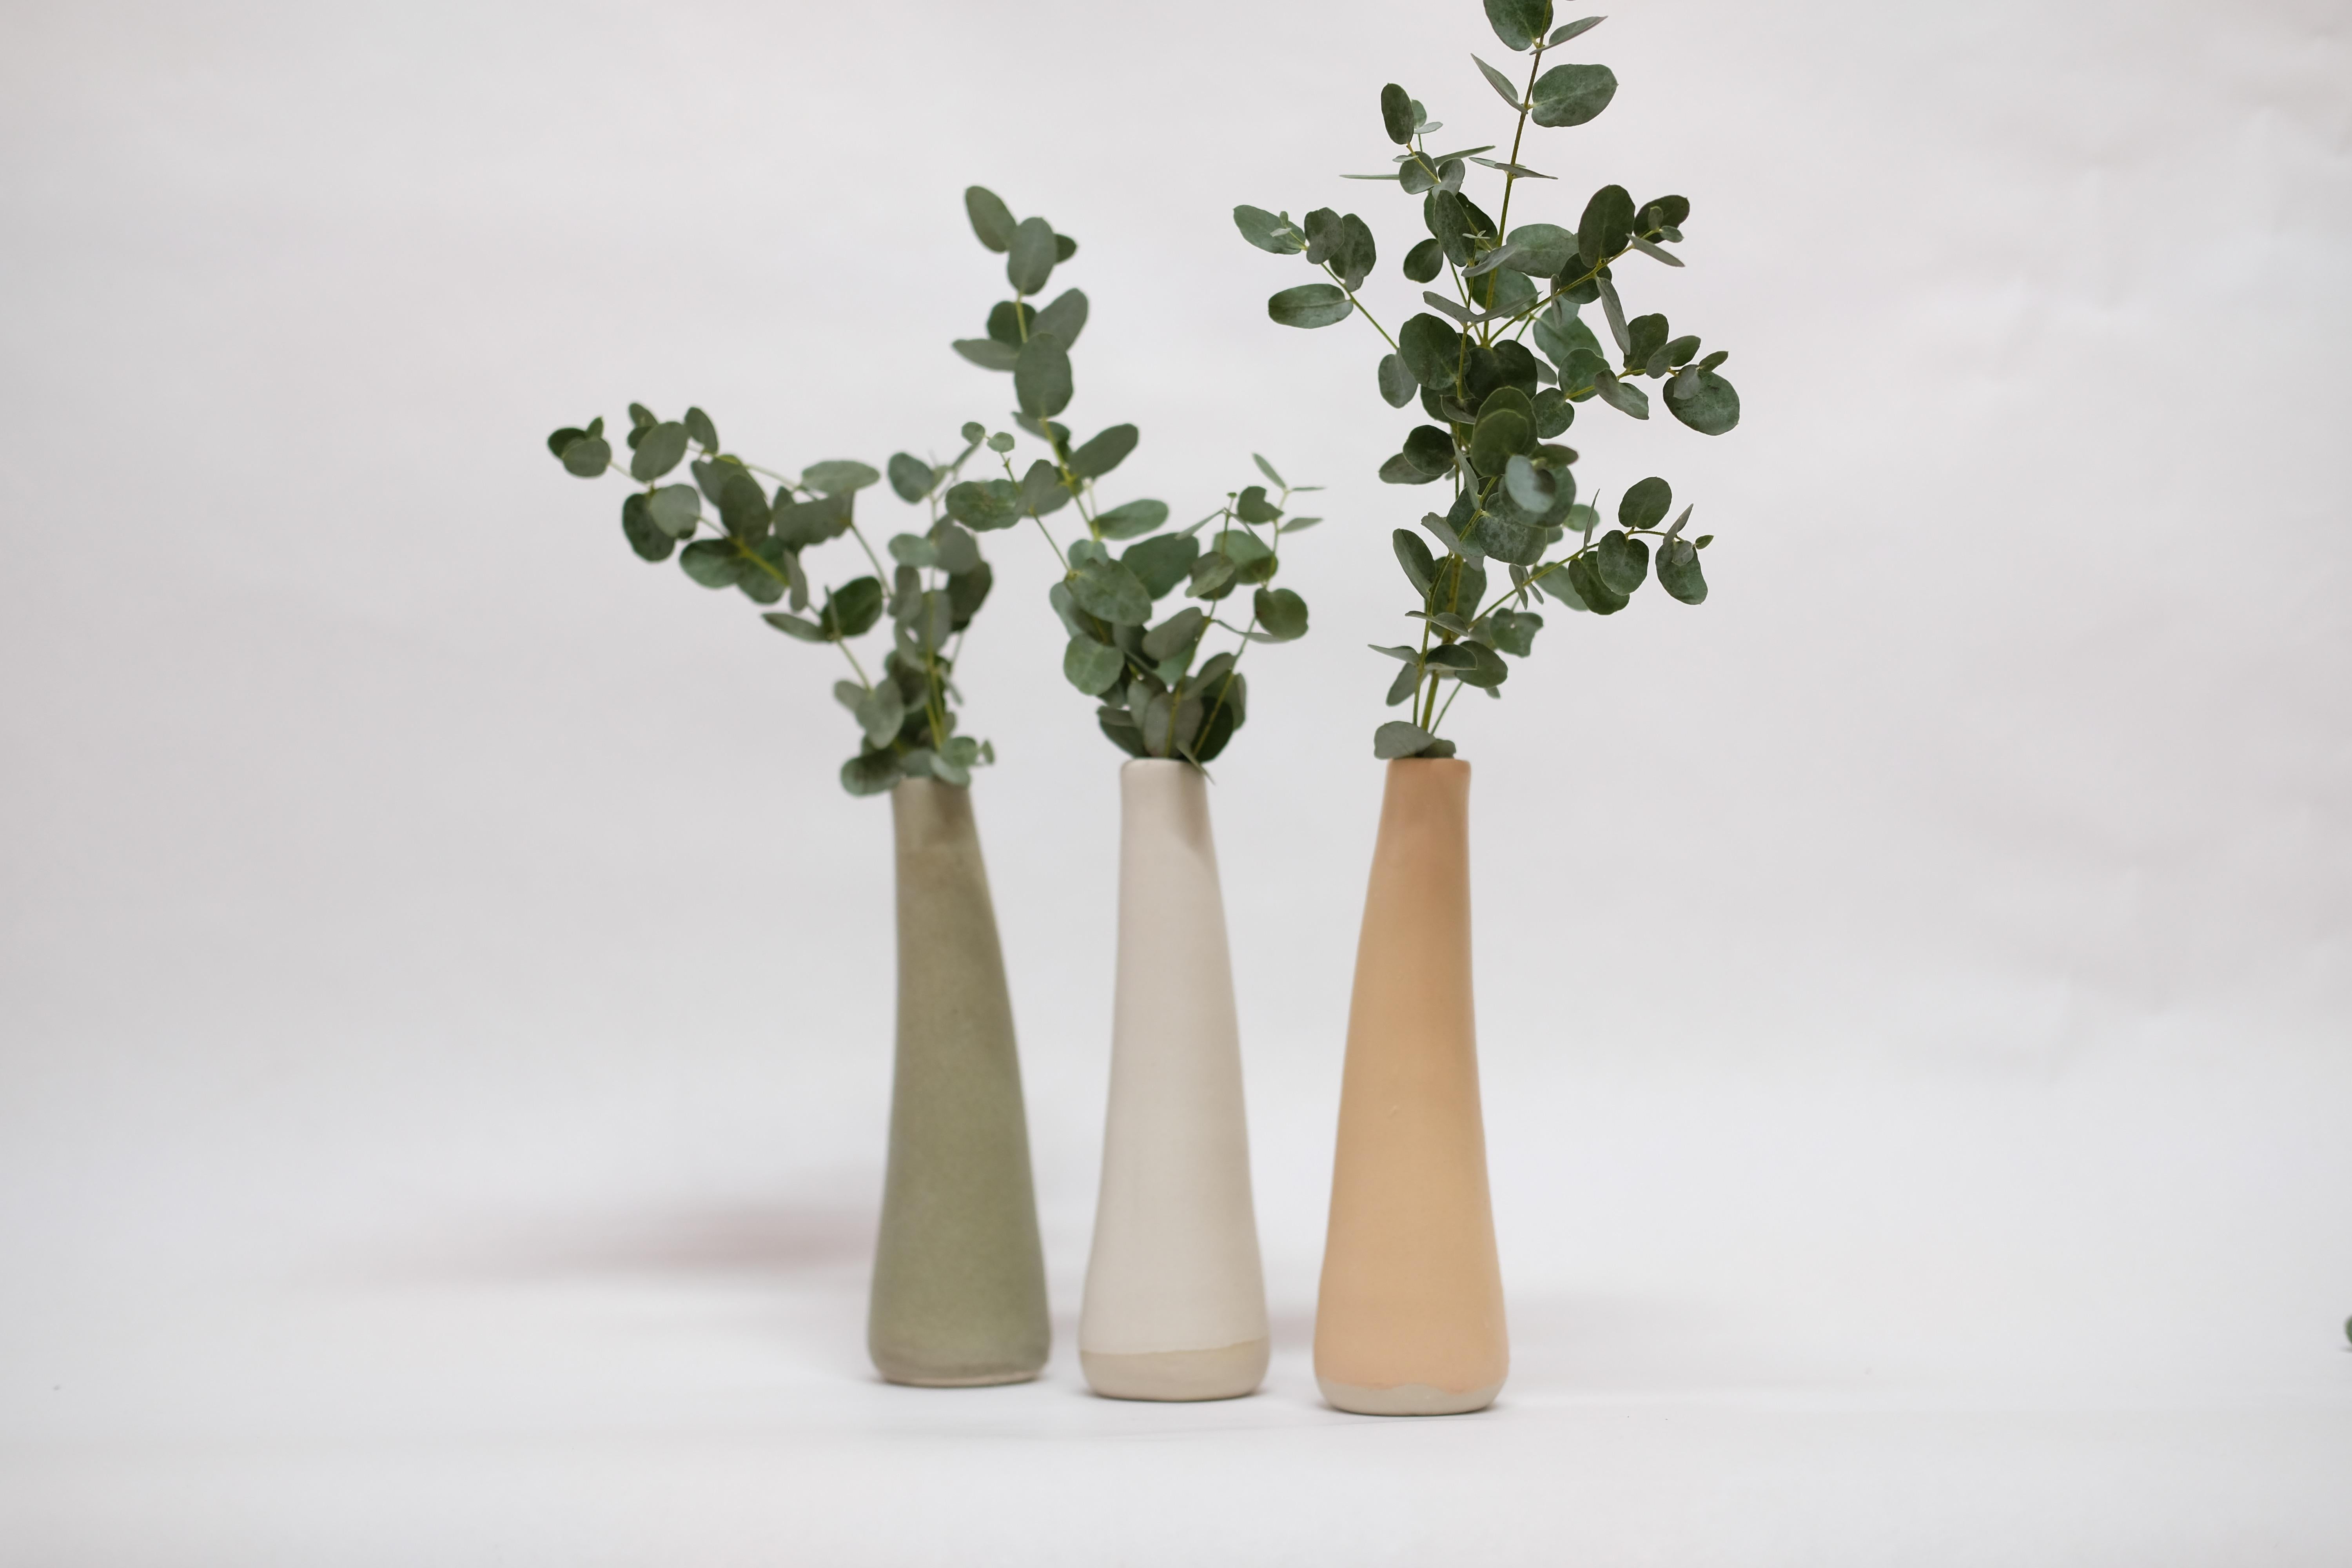 Ensemble de 3 vases en grès Solitario de Camila Apaez
Unique en son genre
Matériaux : Grès cérame
Dimensions : 7 x 7 x 19 cm : 7 x 7 x 19 cm
Options : Os blanc, sauge en pierre, vert artichaut (jusqu'à épuisement des stocks), babeurre.

Cette année